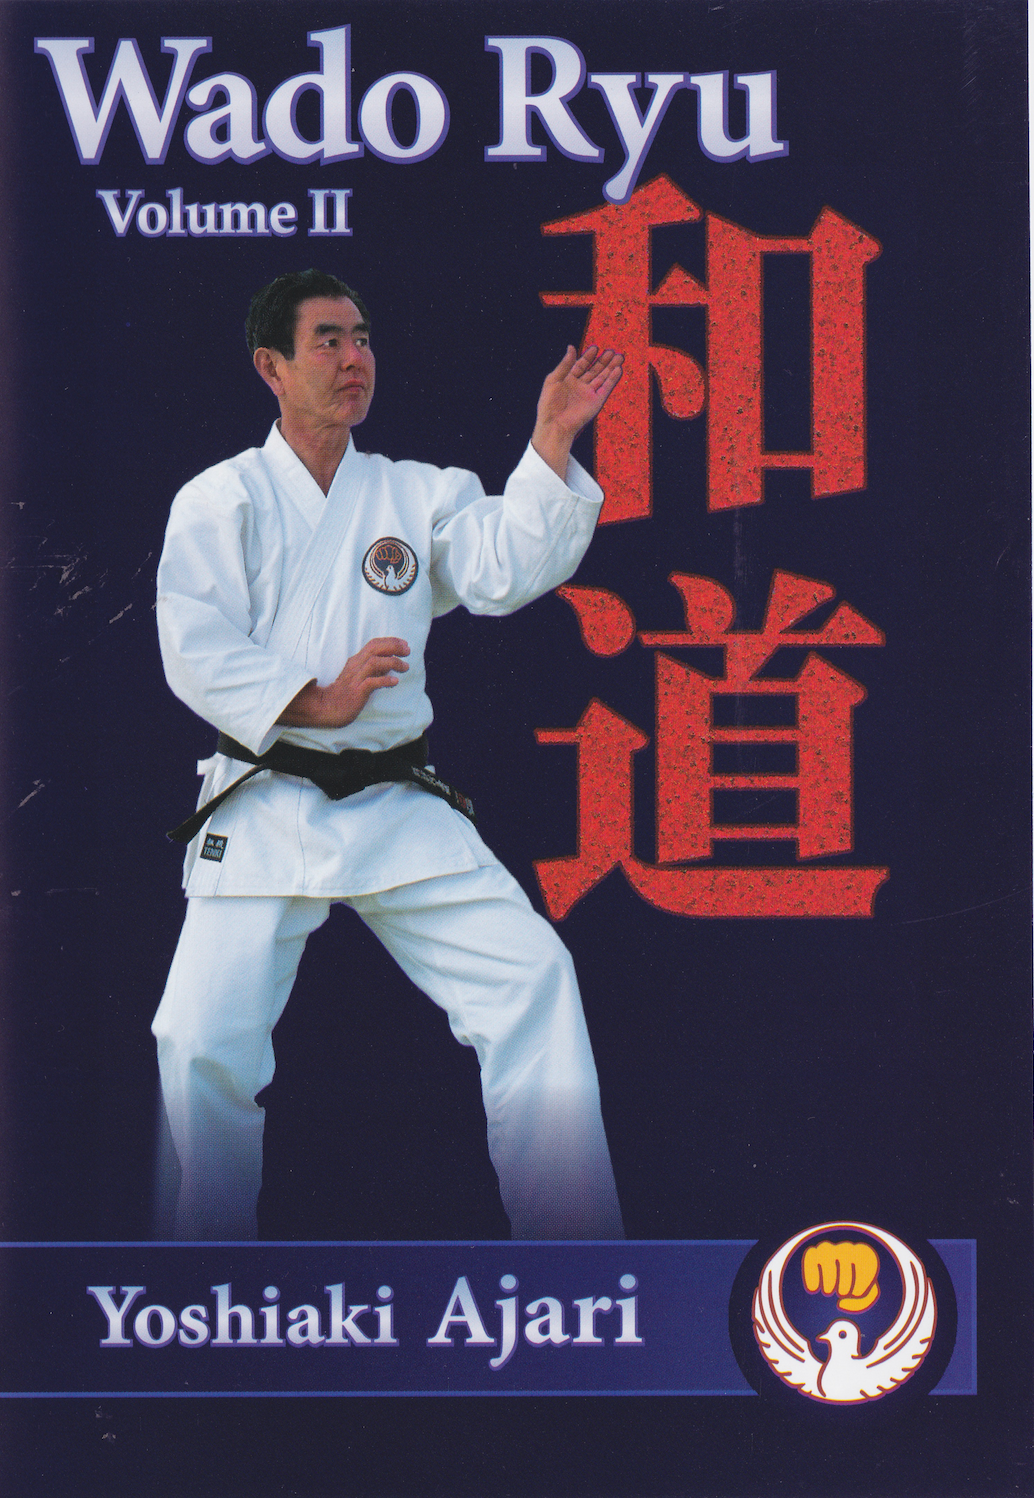 Wado Ryu Karate DVD 2 with Hironori Otsuka & Yoshiaki Ajari - Budovideos Inc